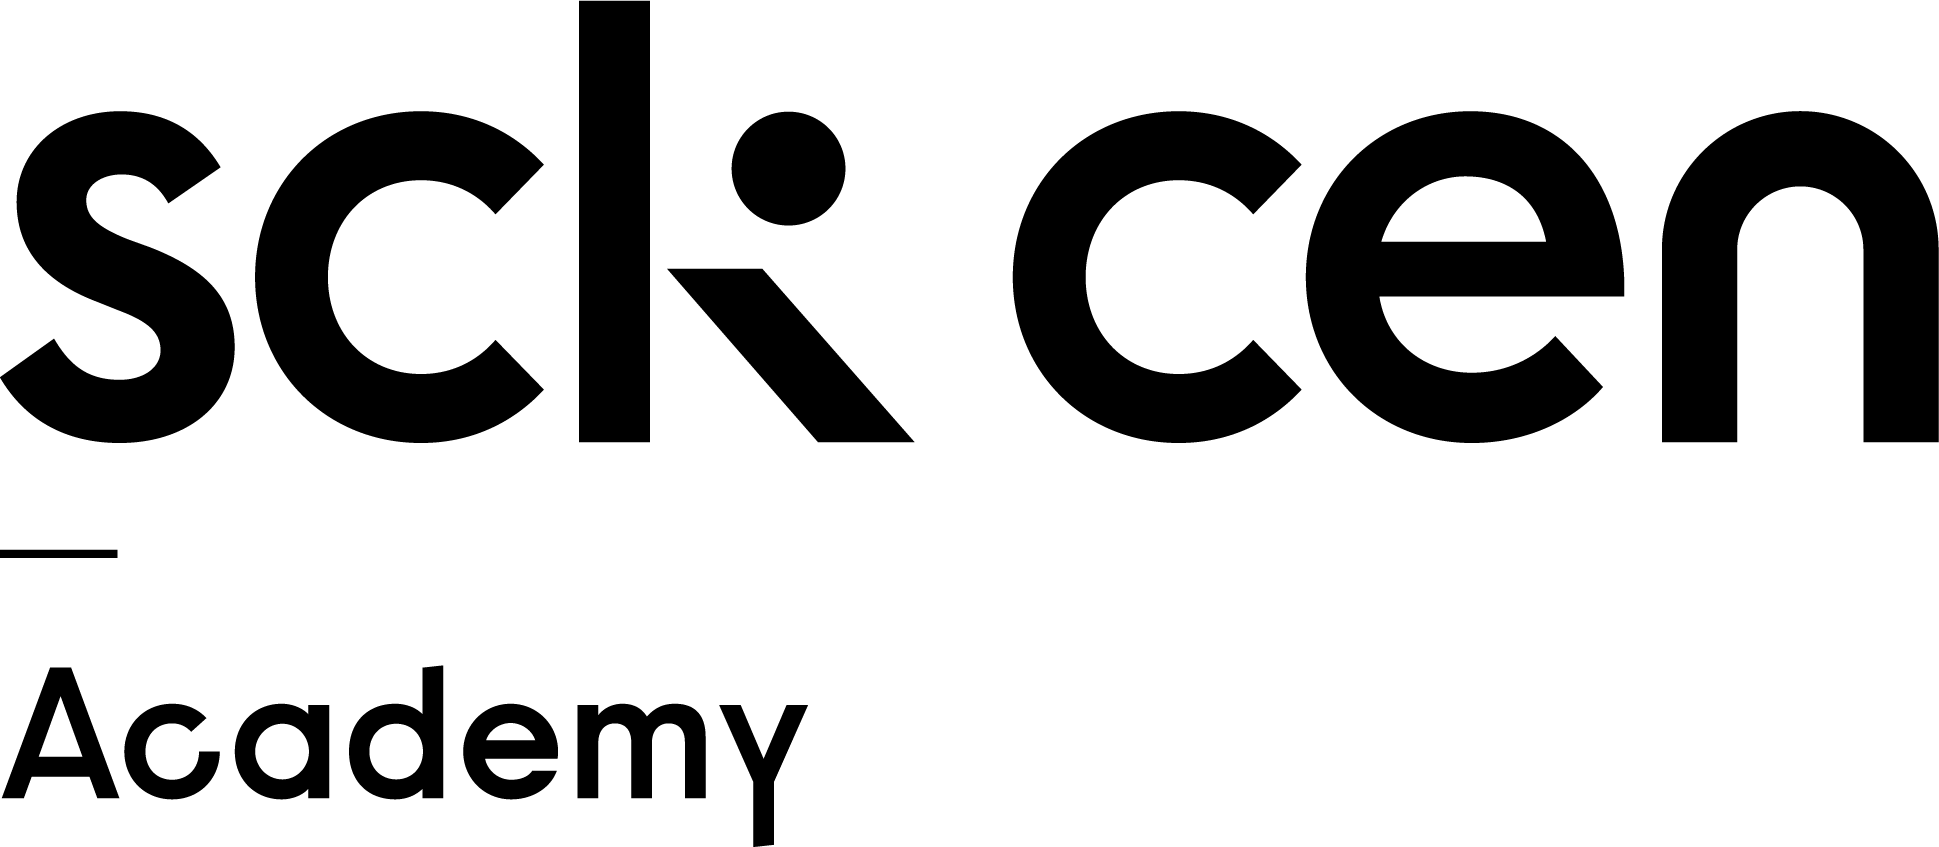 sckcen Academy logo